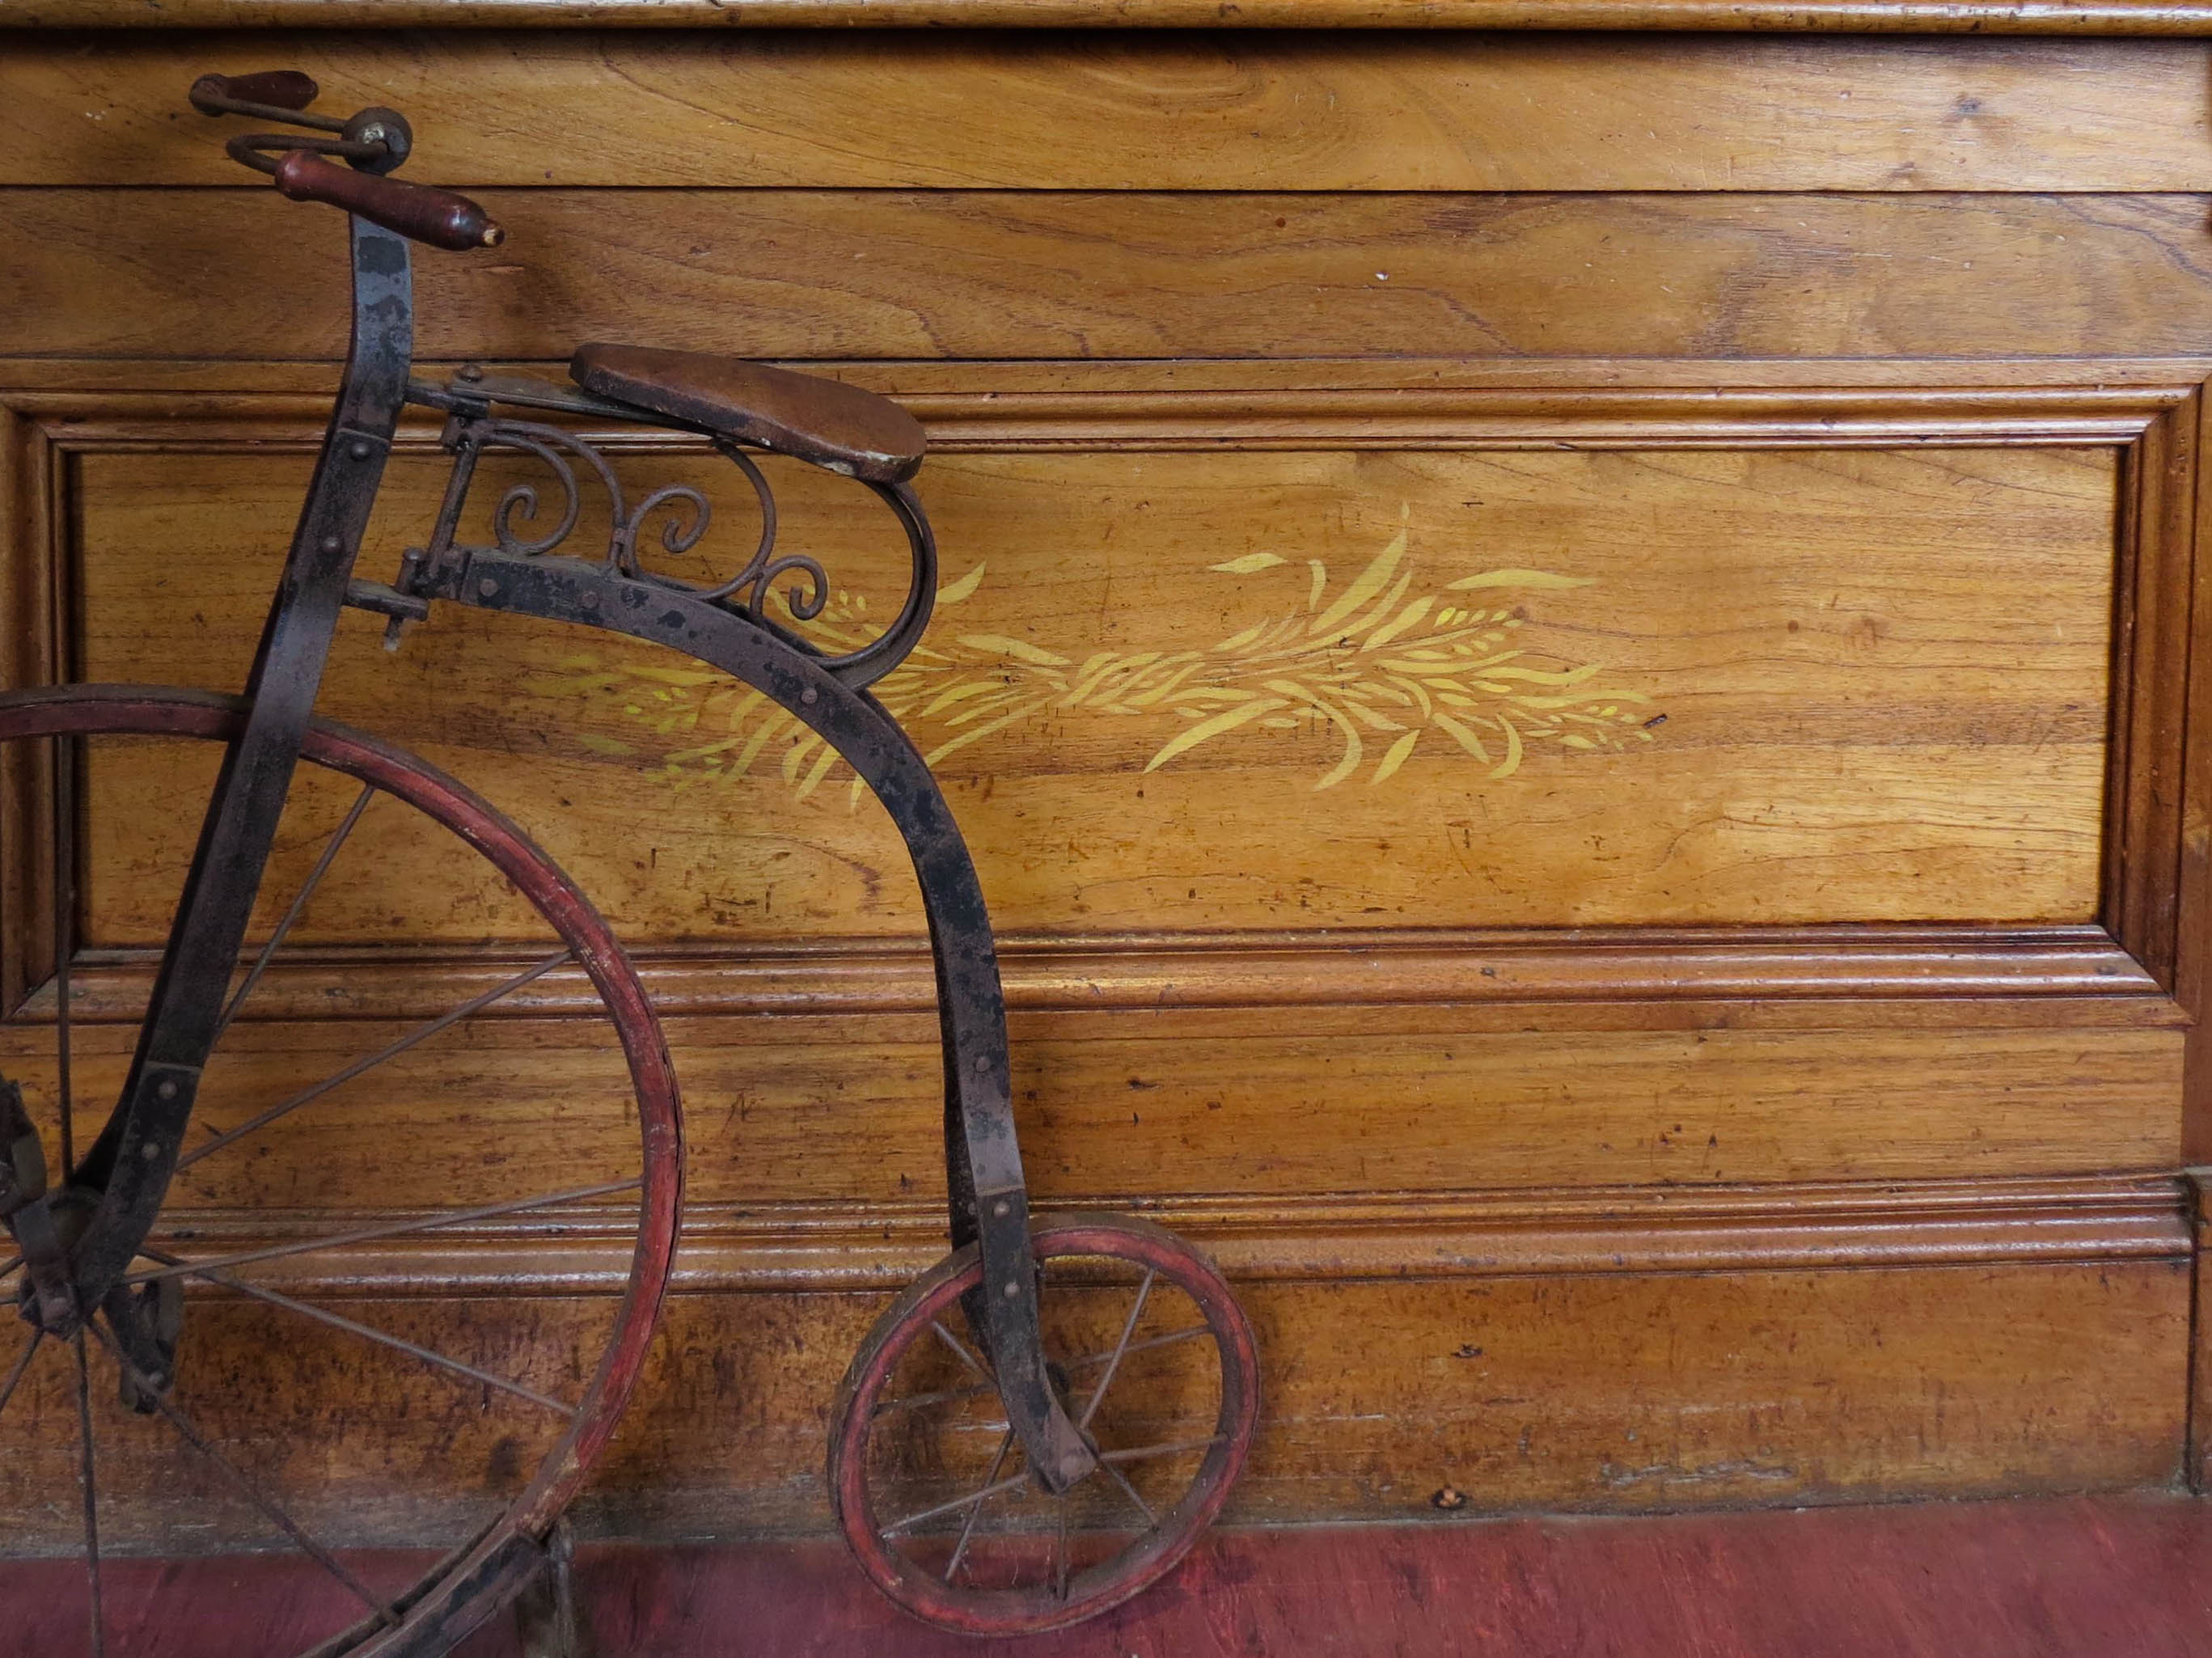 Historical bike ornament inside at Evandale Estate.